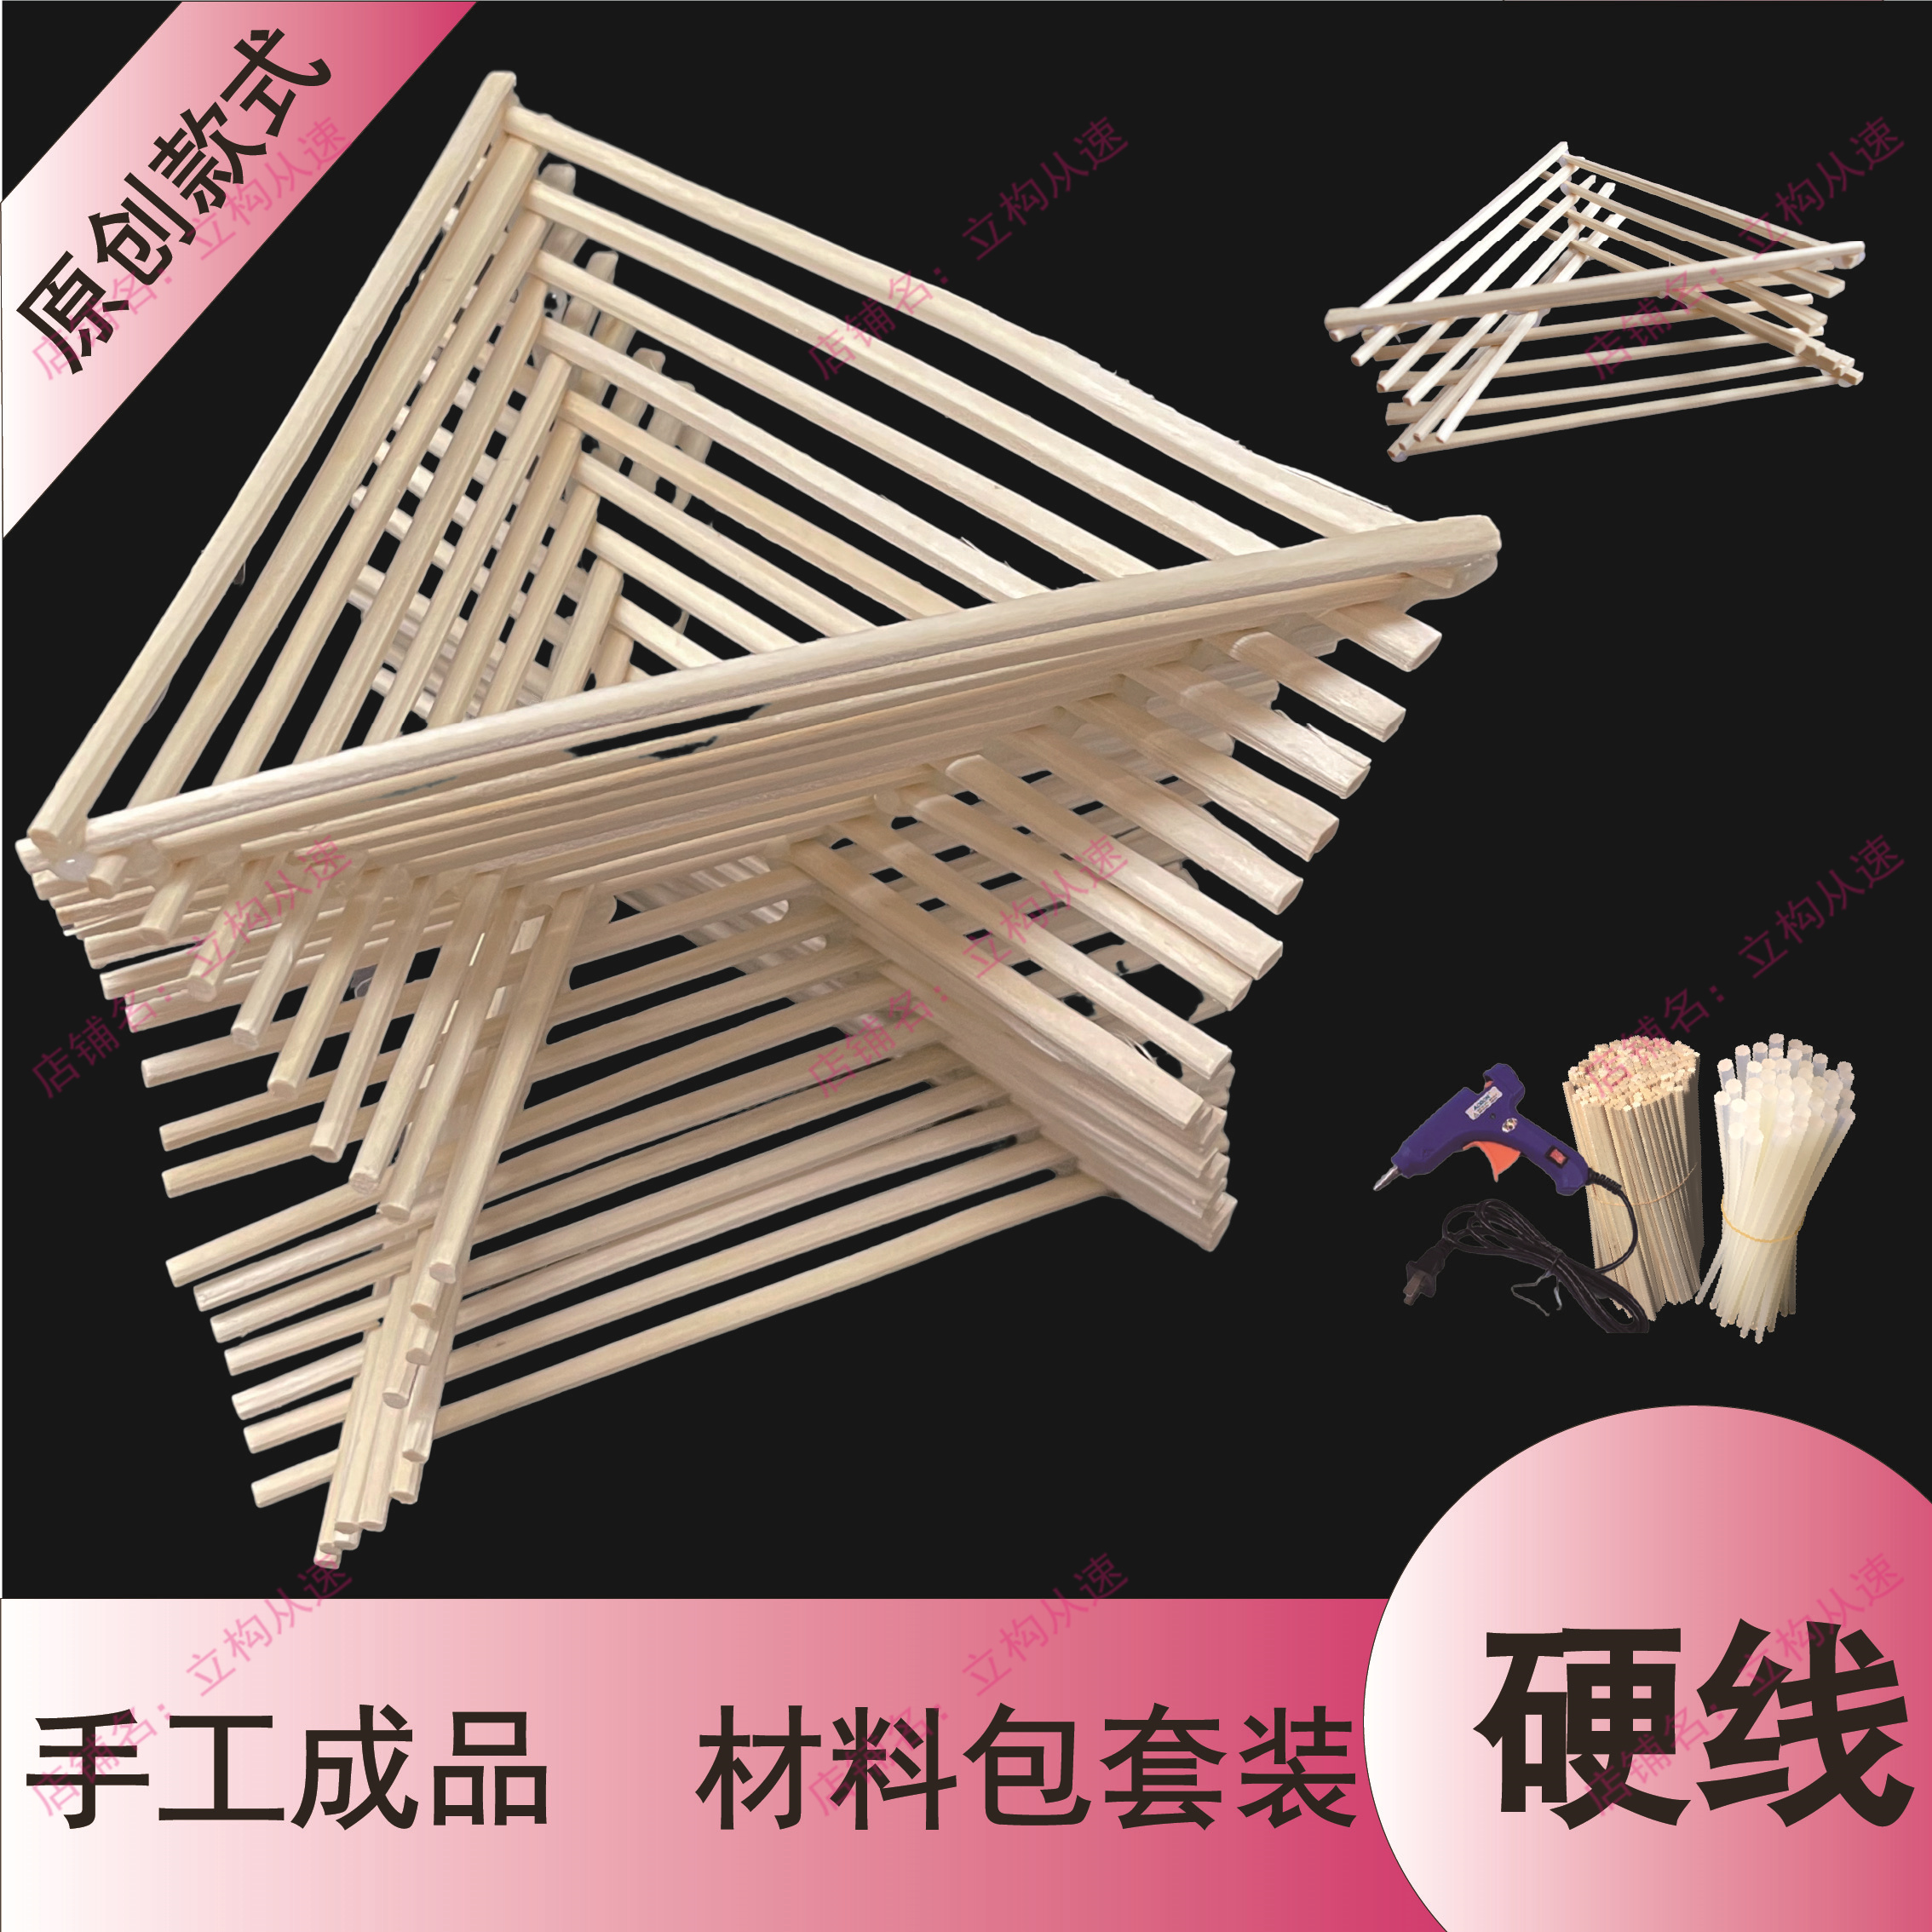 【硬线】立体构成三角形渐变成品作品建筑设计定制专业艺术材料包